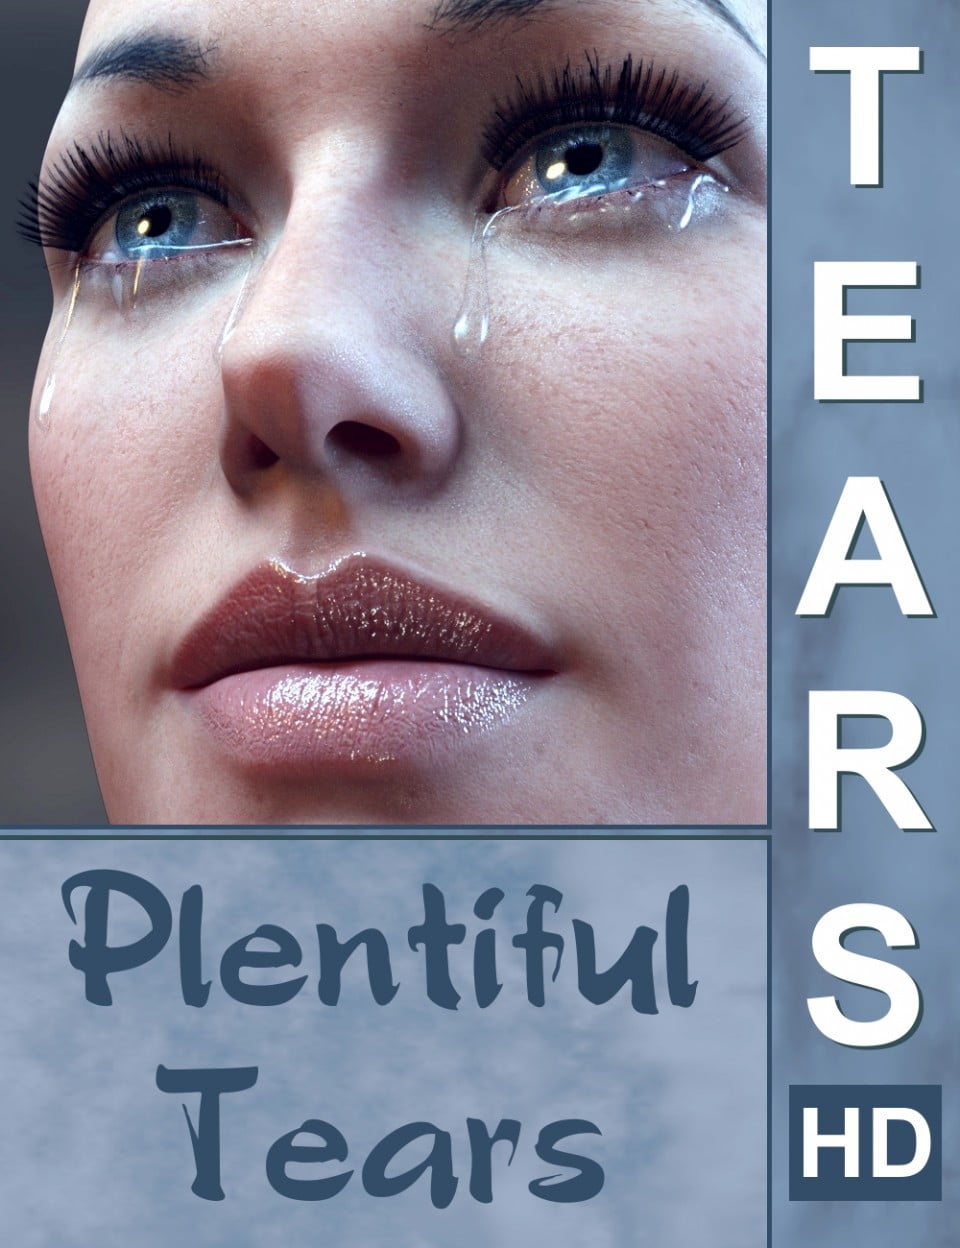 01-tears-hd-plentiful-tears-daz3d